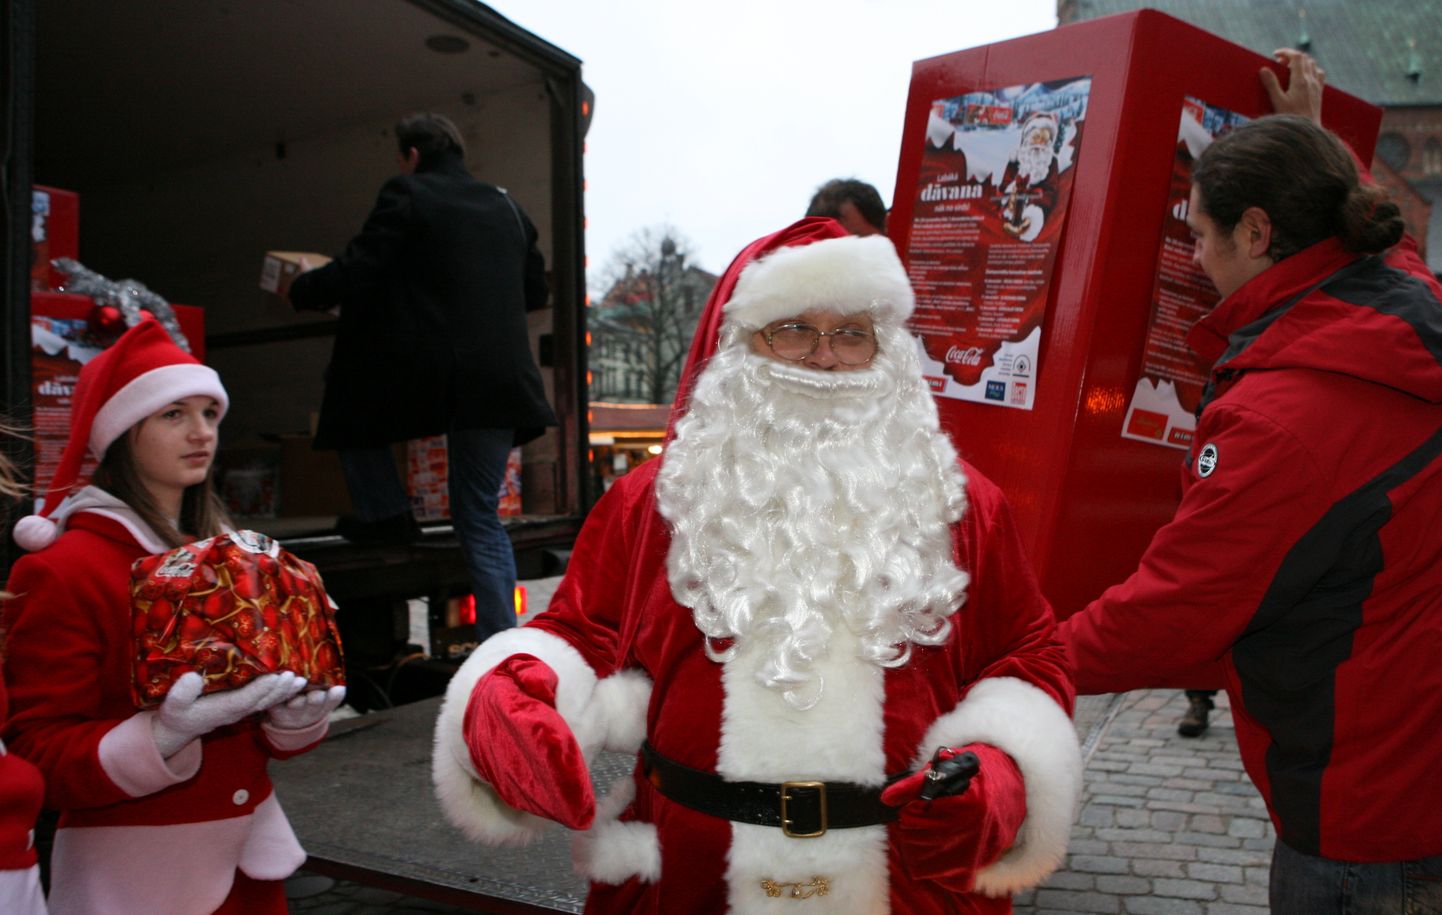 Labdarības akcijas "Ziemassvētku karavāna" Ziemassvētku vecītis saņem Latvijas radio darbinieku sarūpētās Ziemassvētku dāvanas, kuras nogādās daudzbērnu ģimeņu bērniem visā Latvijā.